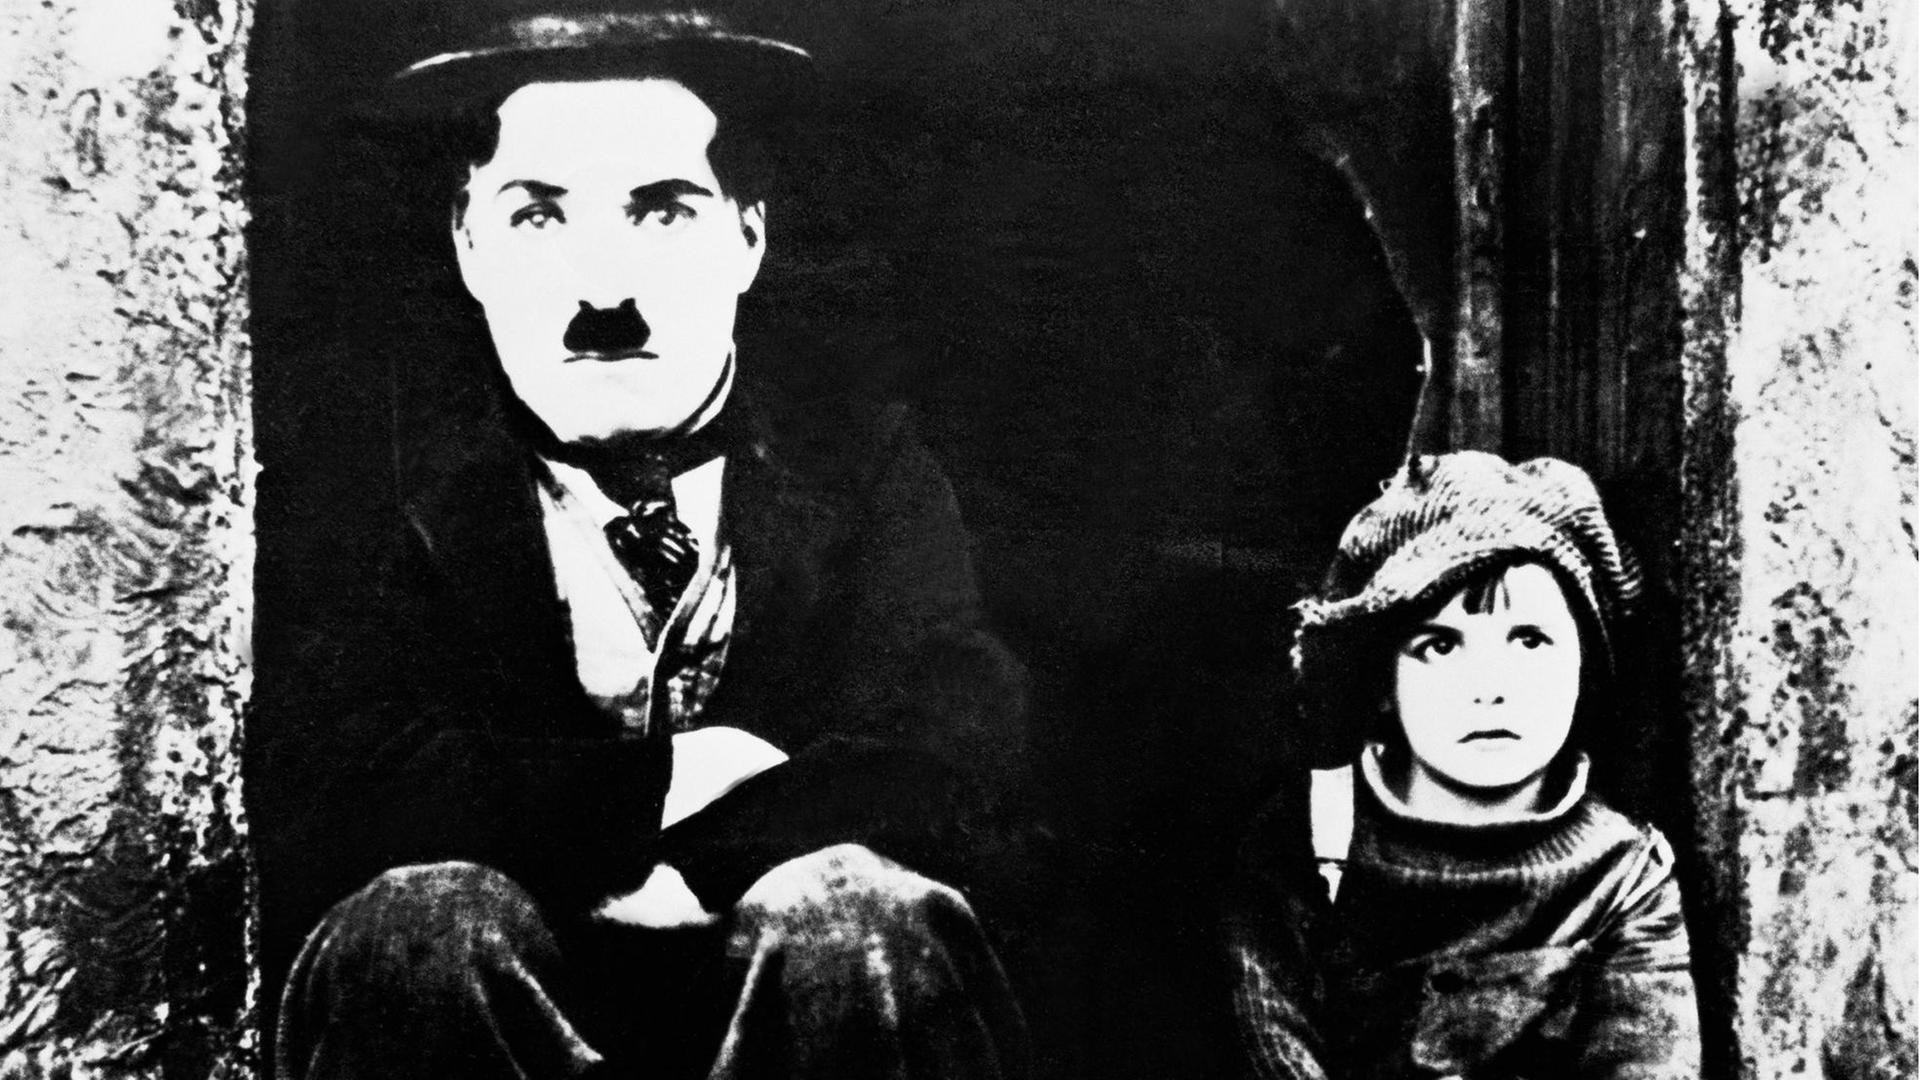 Ein schwarz-weißes Film-Still zeigt: Charlie Chaplin (links) - mit seiner typischen Melone und Schnauzer - als Tramp und Jackie Coogan als Kid in "THE KID" von 1921. Beide sitzen auf einem Treppenabsatz und blicken frontal al in die Kamera.